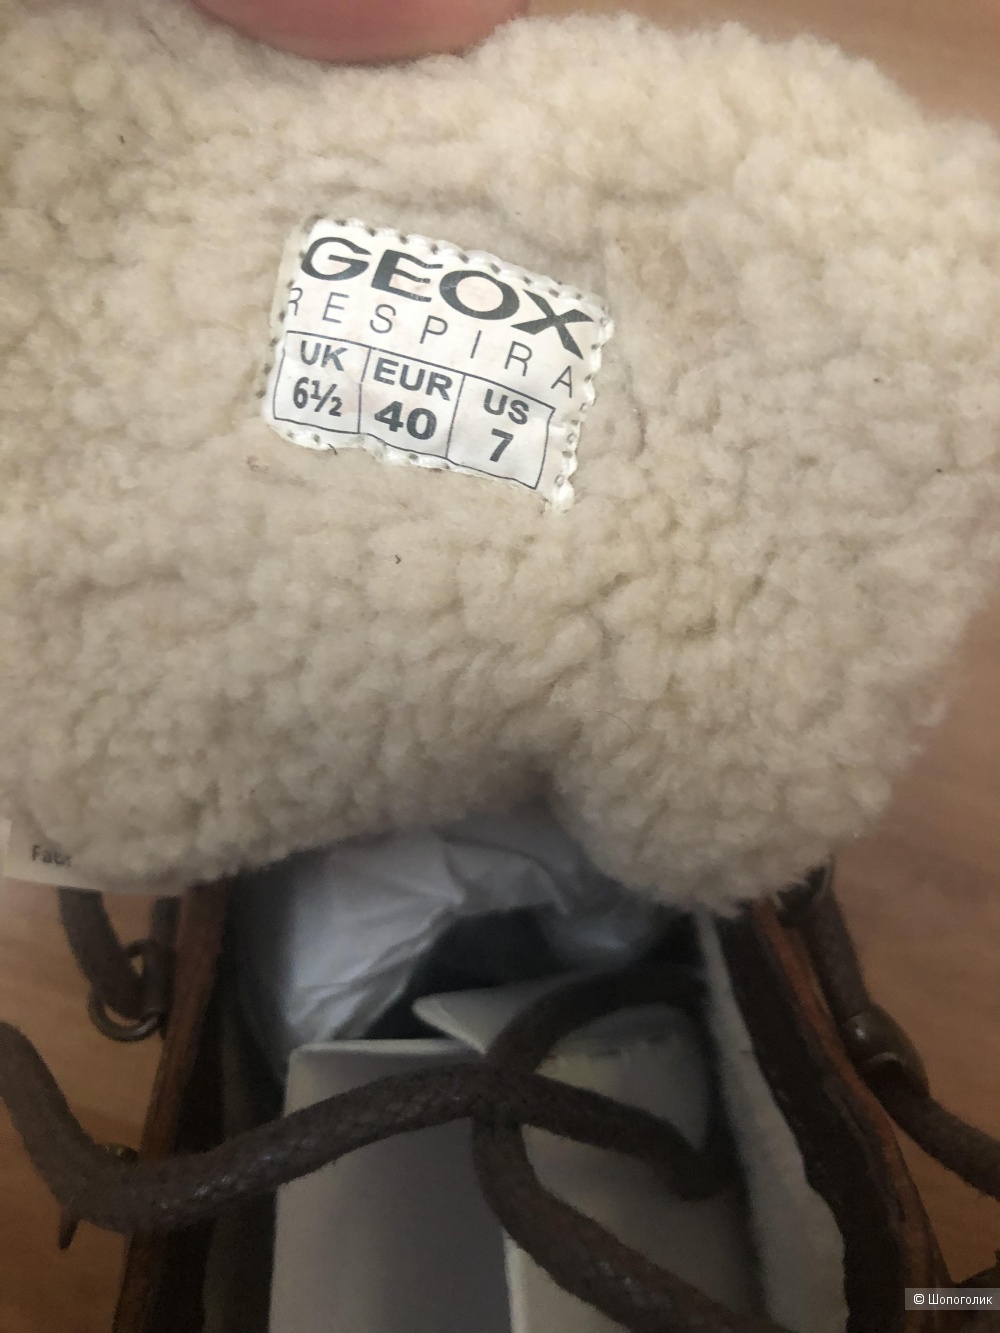 Ботинки Geox размер 40